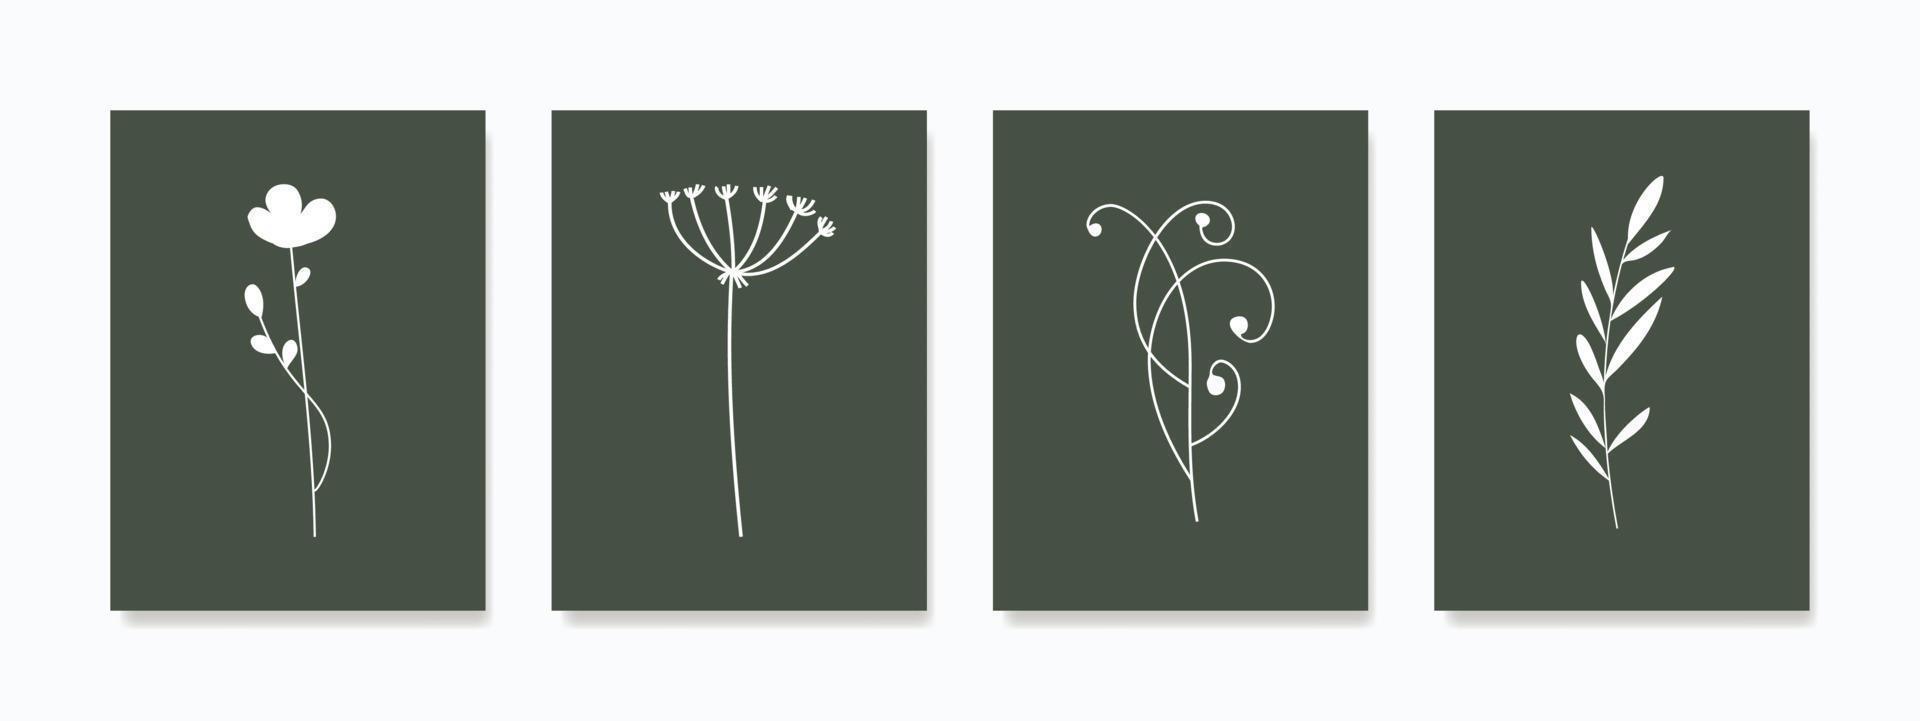 minimalistisk botanisk vägg konst. terar ritad för hand organisk former i naturlig färger, dessa mönster är perfekt för inramade grafik, duk konstverk, duk grafik, affischer, och tapet. vektor